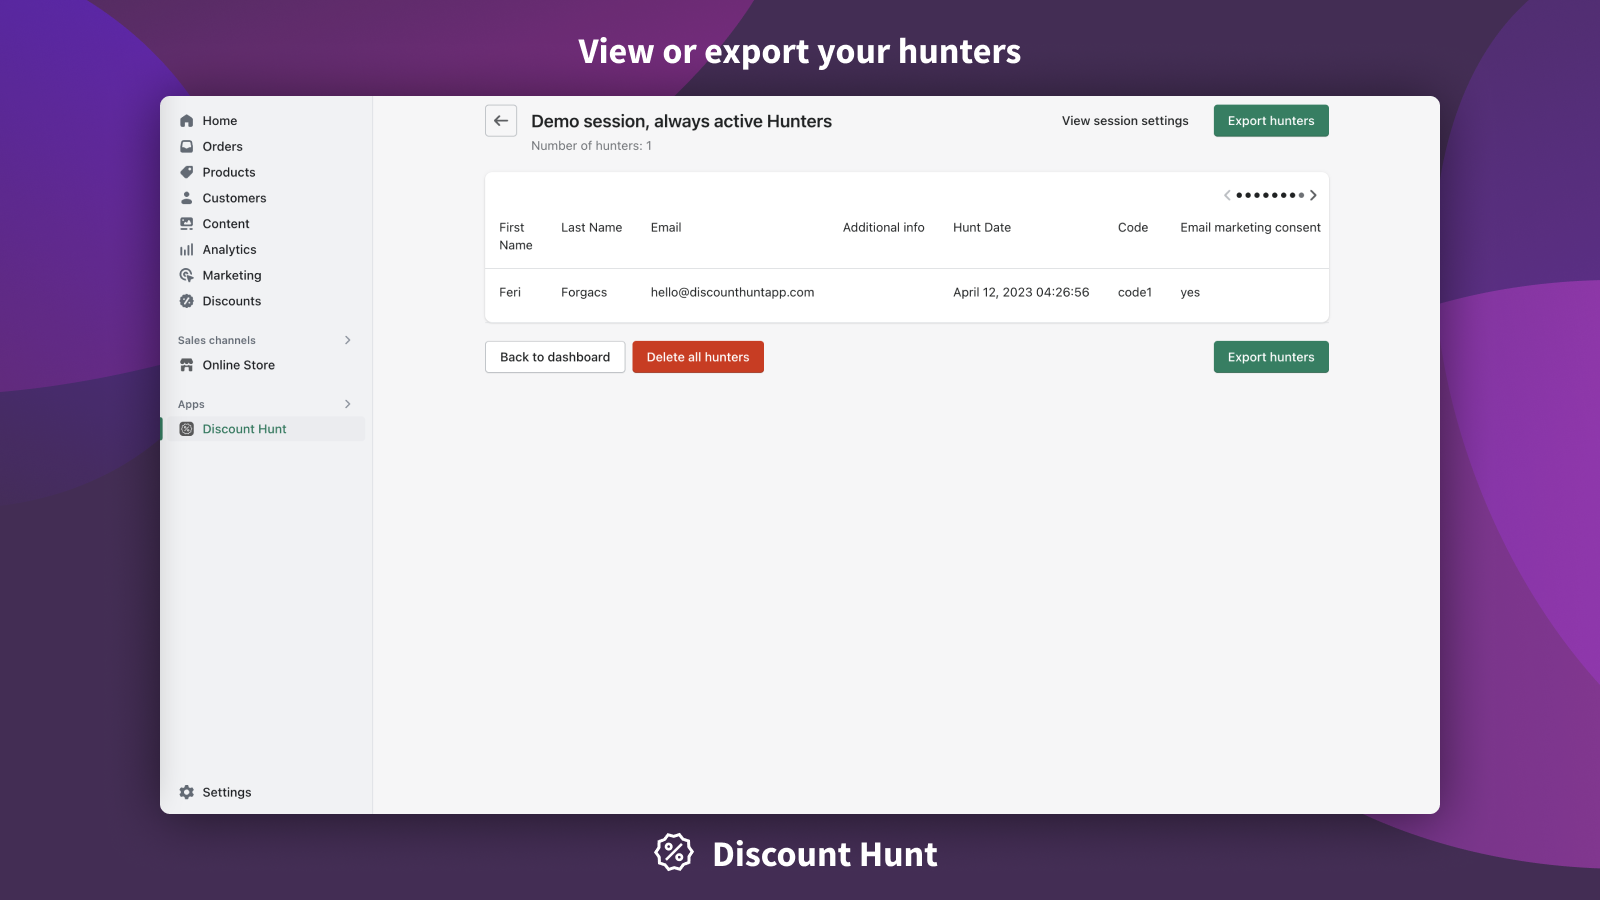 Visualize ou exporte seus caçadores